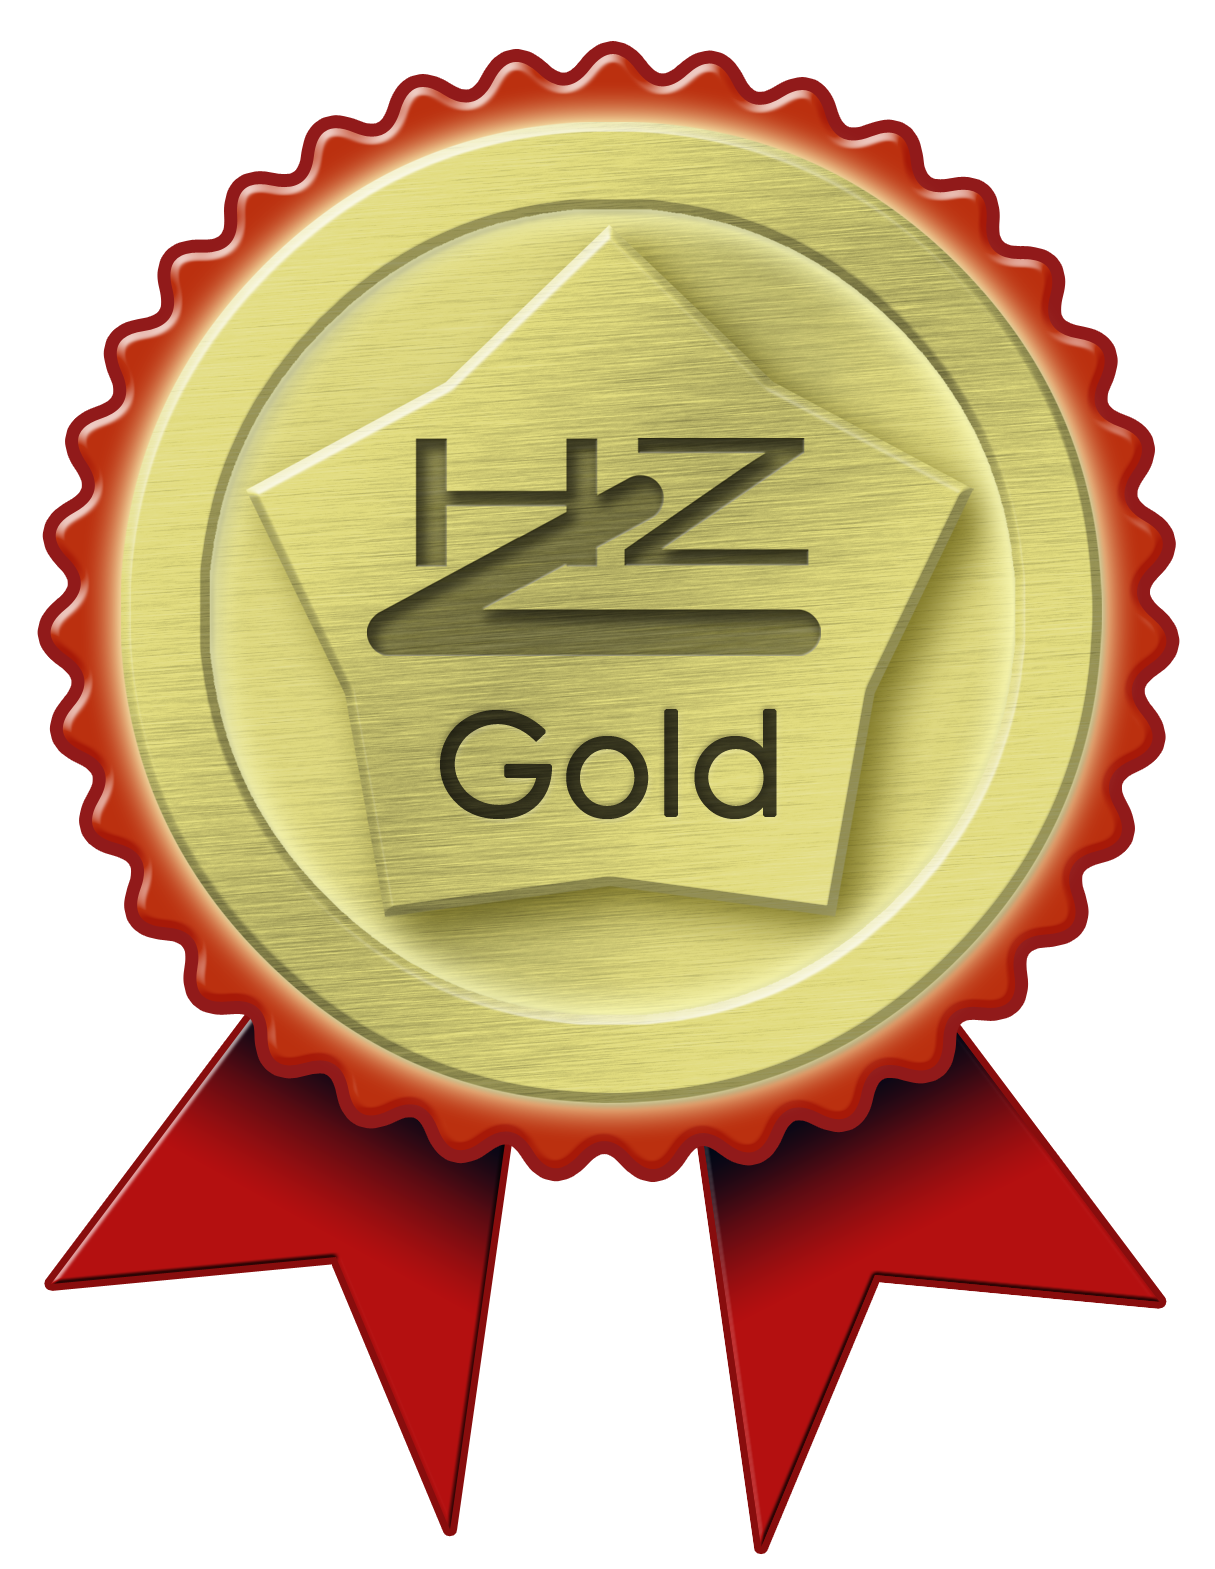 HZ_MedalsCatg_2_Gold